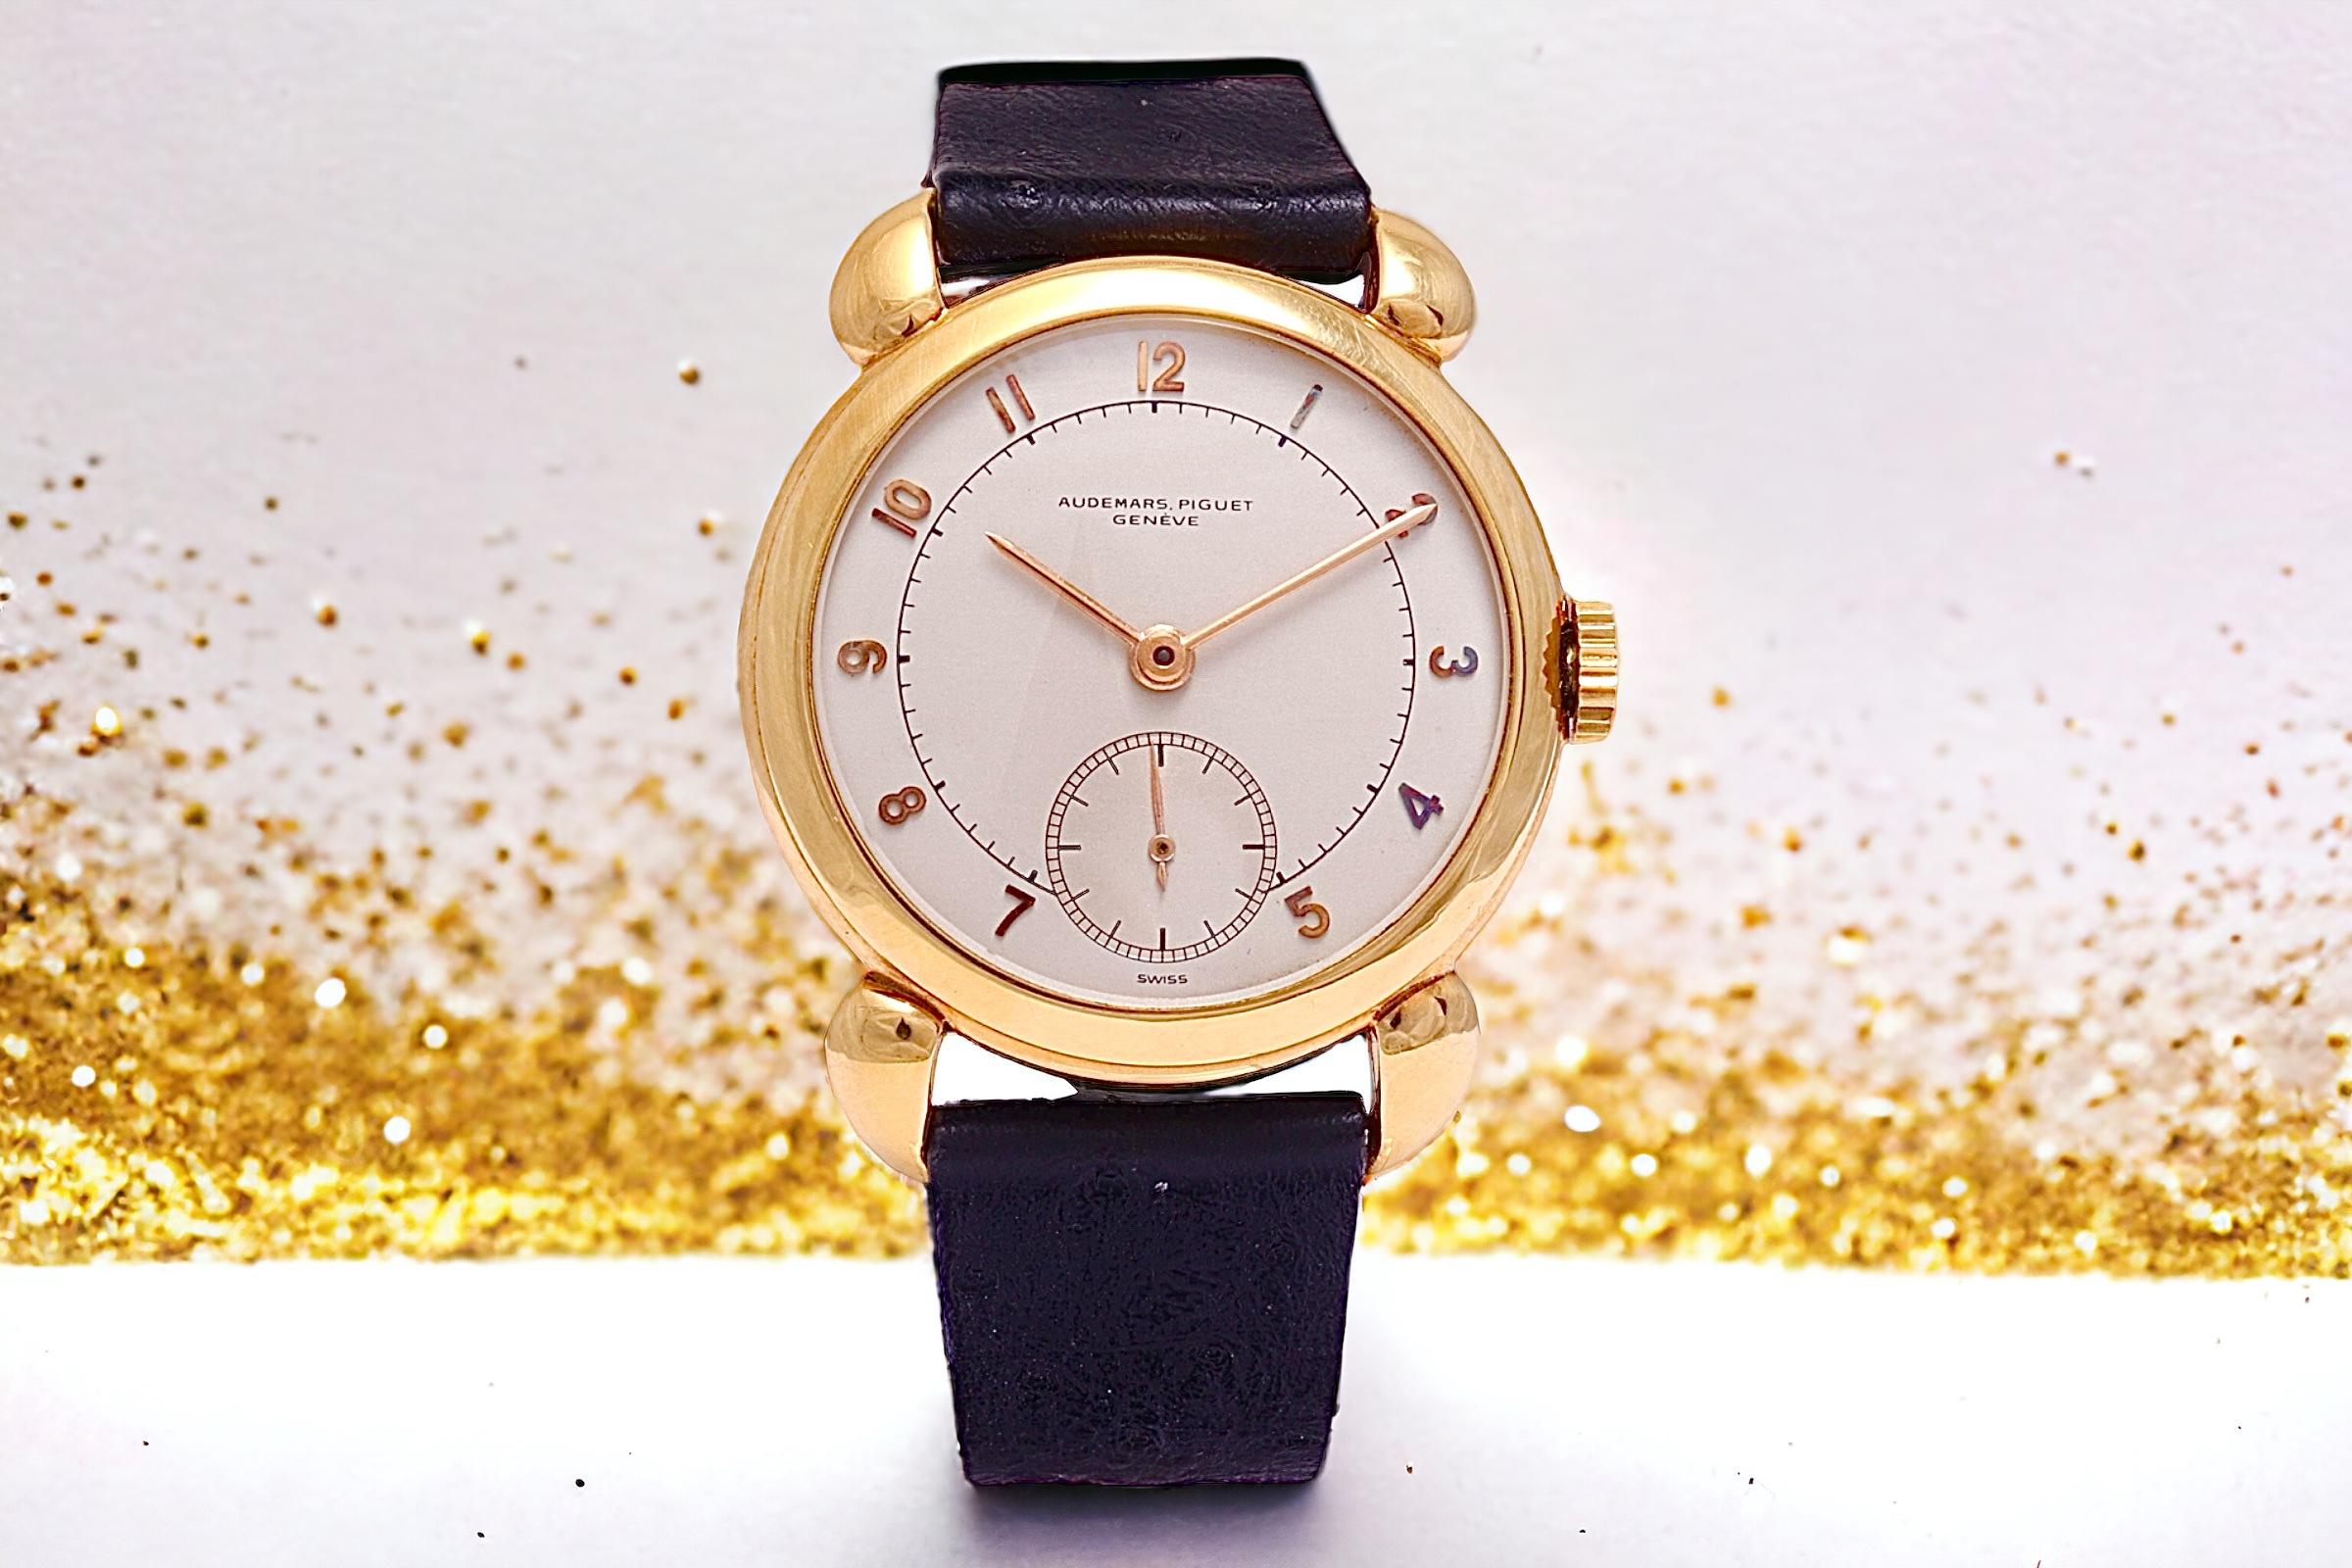 18 Kt Gold Audemars Piguet Calatrava Vintage Rare Collectors Wrist Watch 1940's For Sale 2